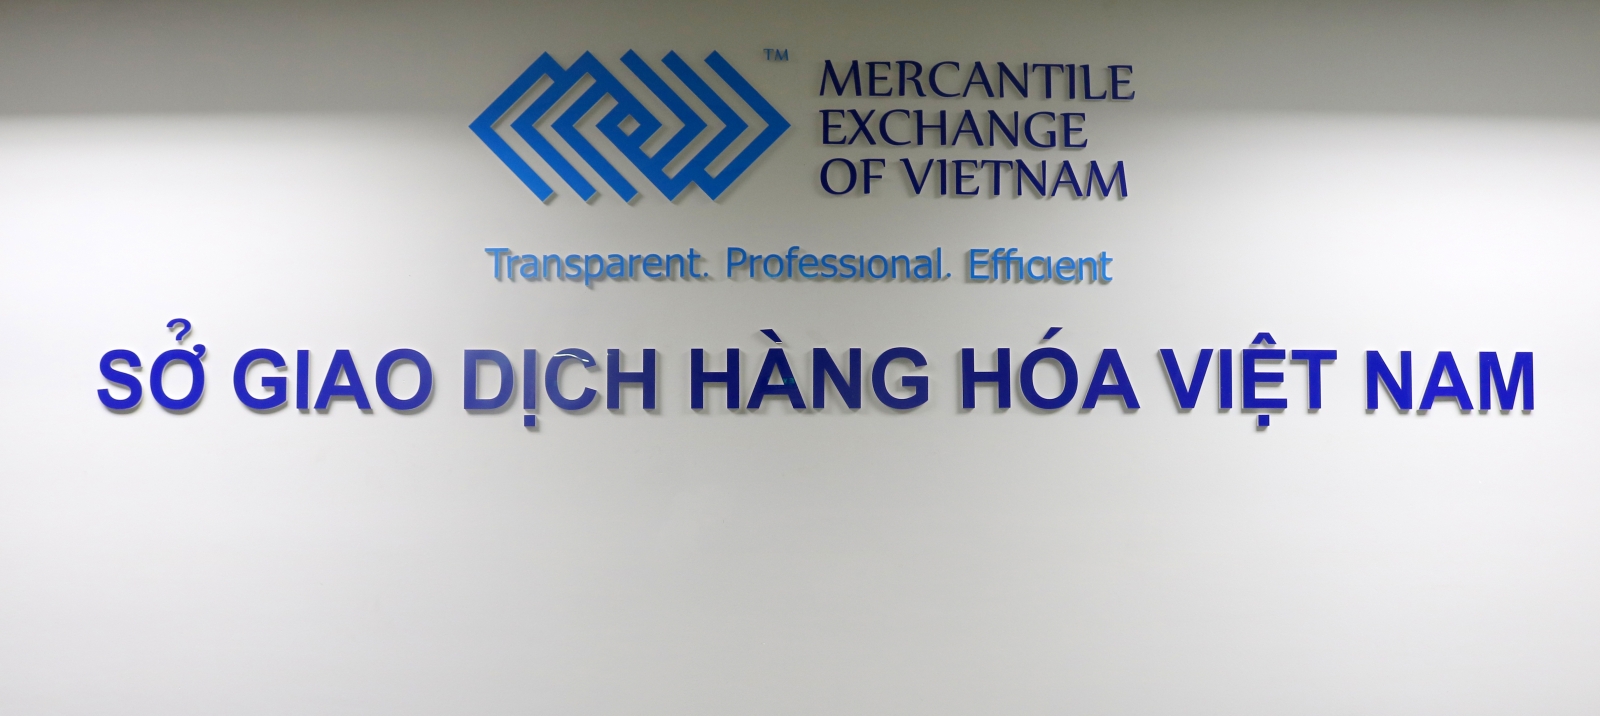 Công ty Cổ phần Giao dịch Hàng hóa SCE là Thành viên Kinh doanh mới của Sở Giao dịch Hàng hóa Việt Nam